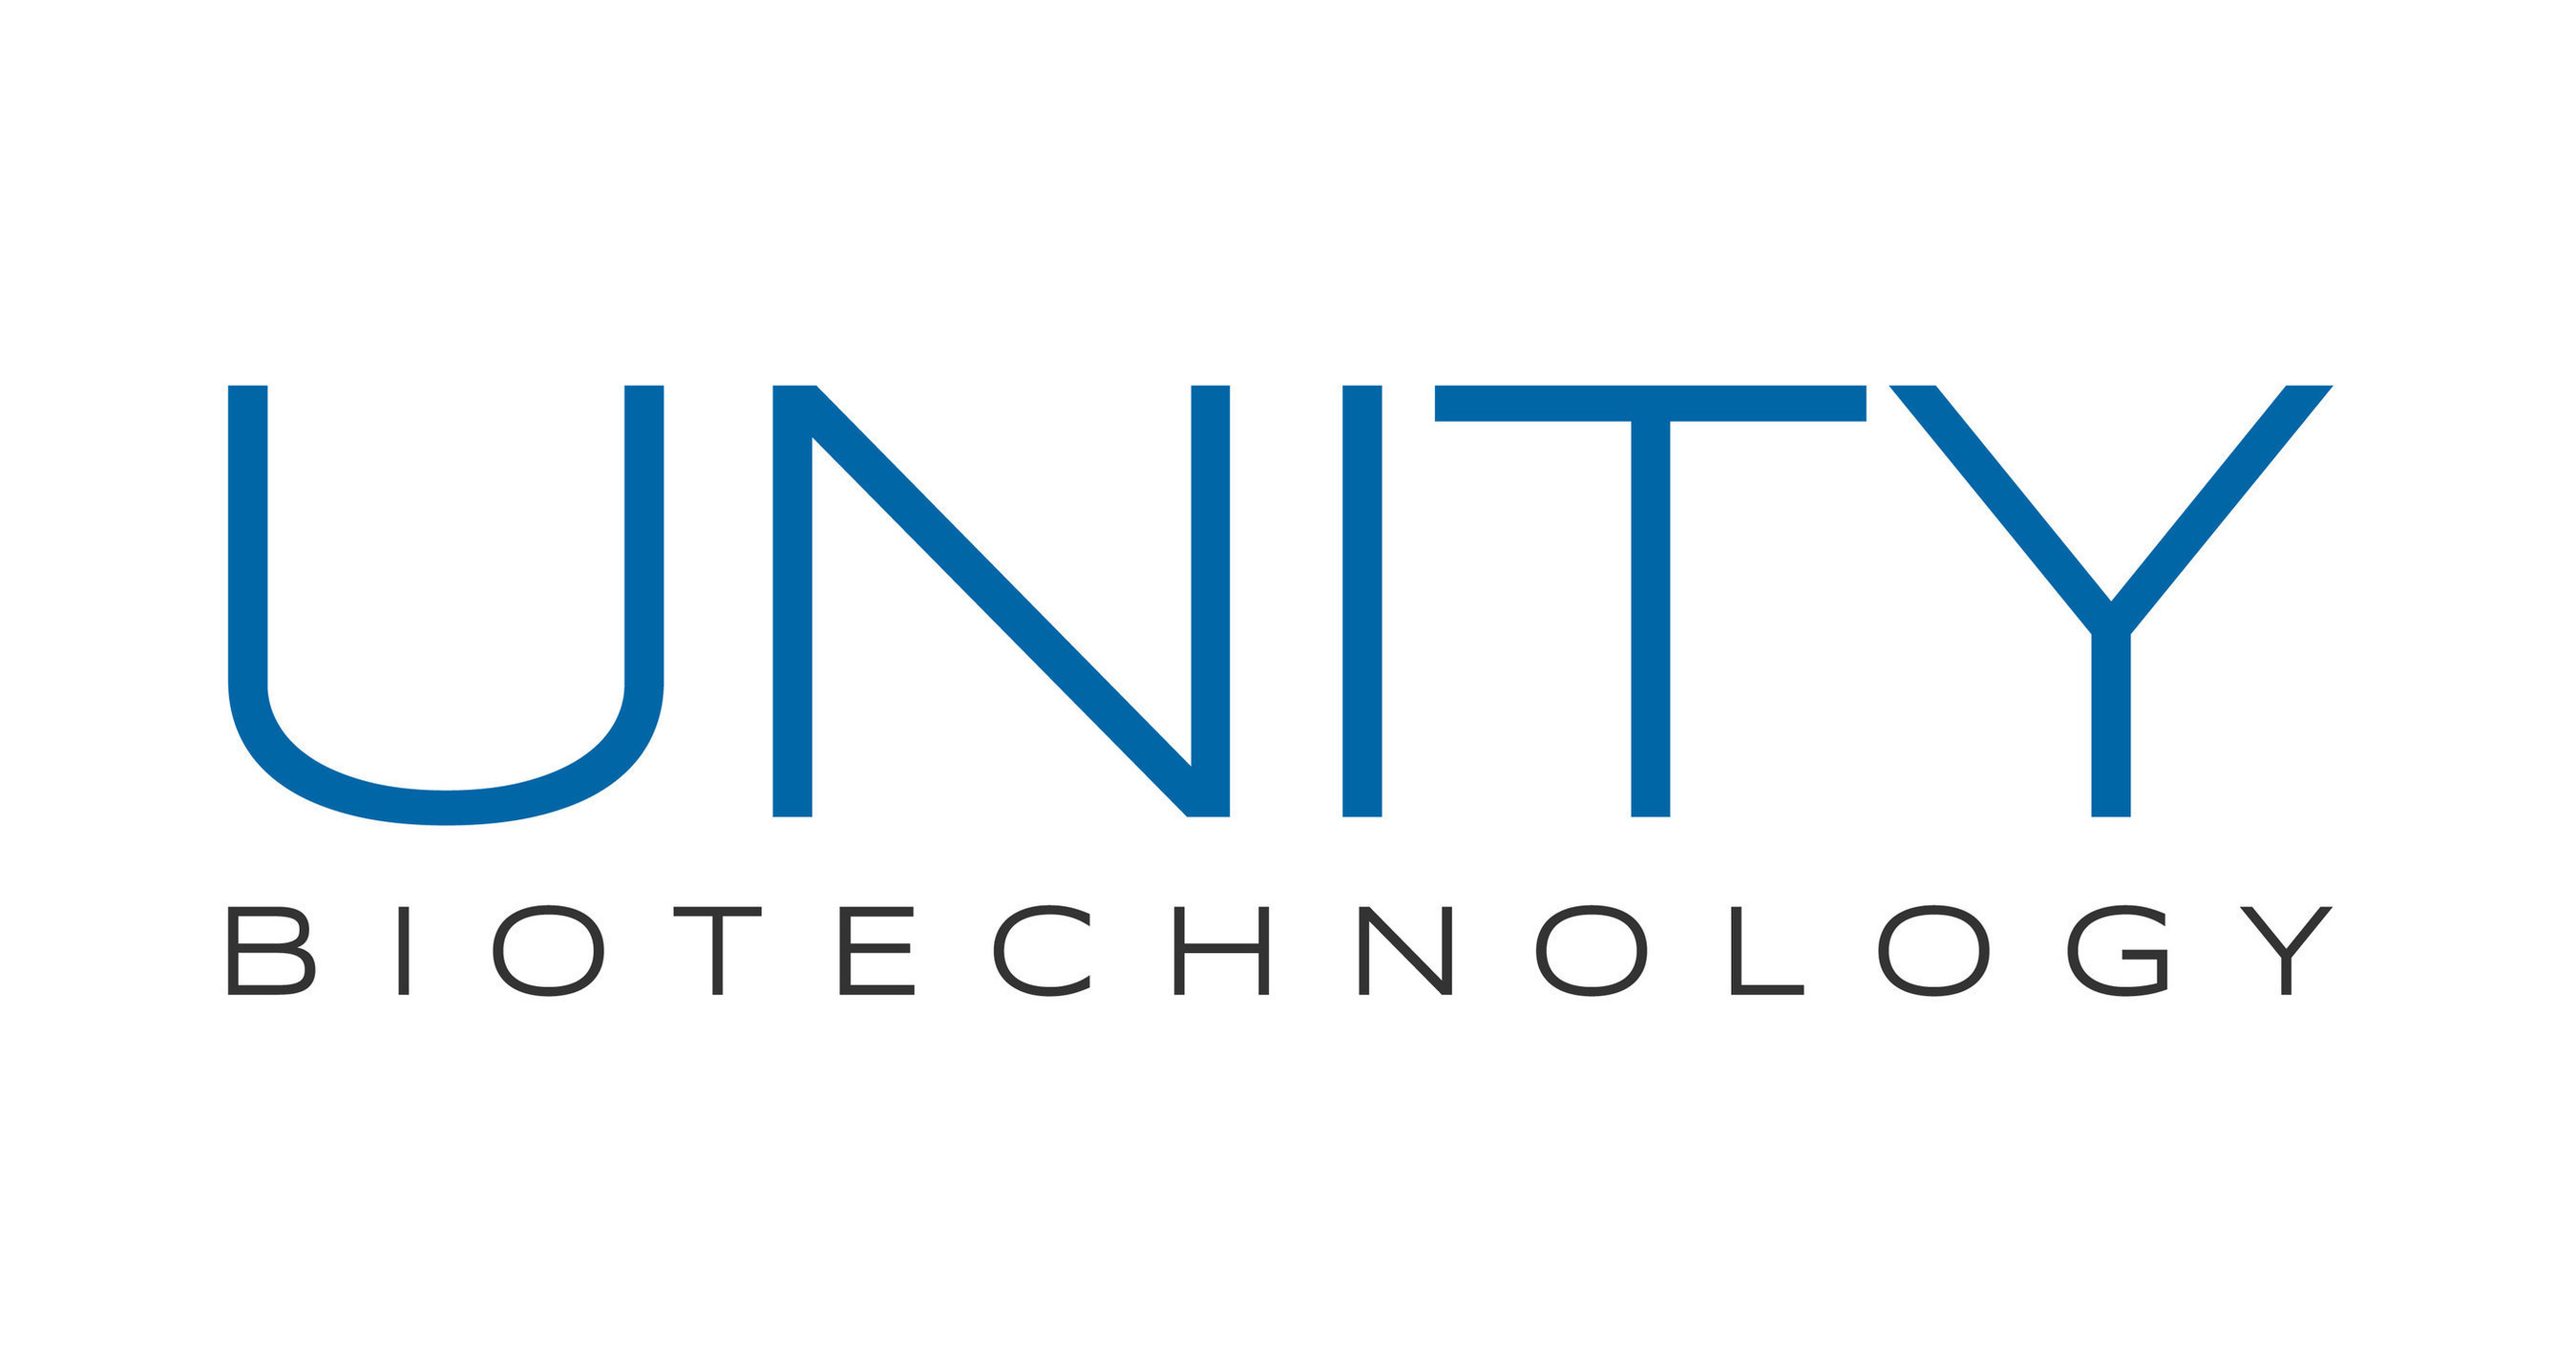 Unity Biotechnology, Inc.